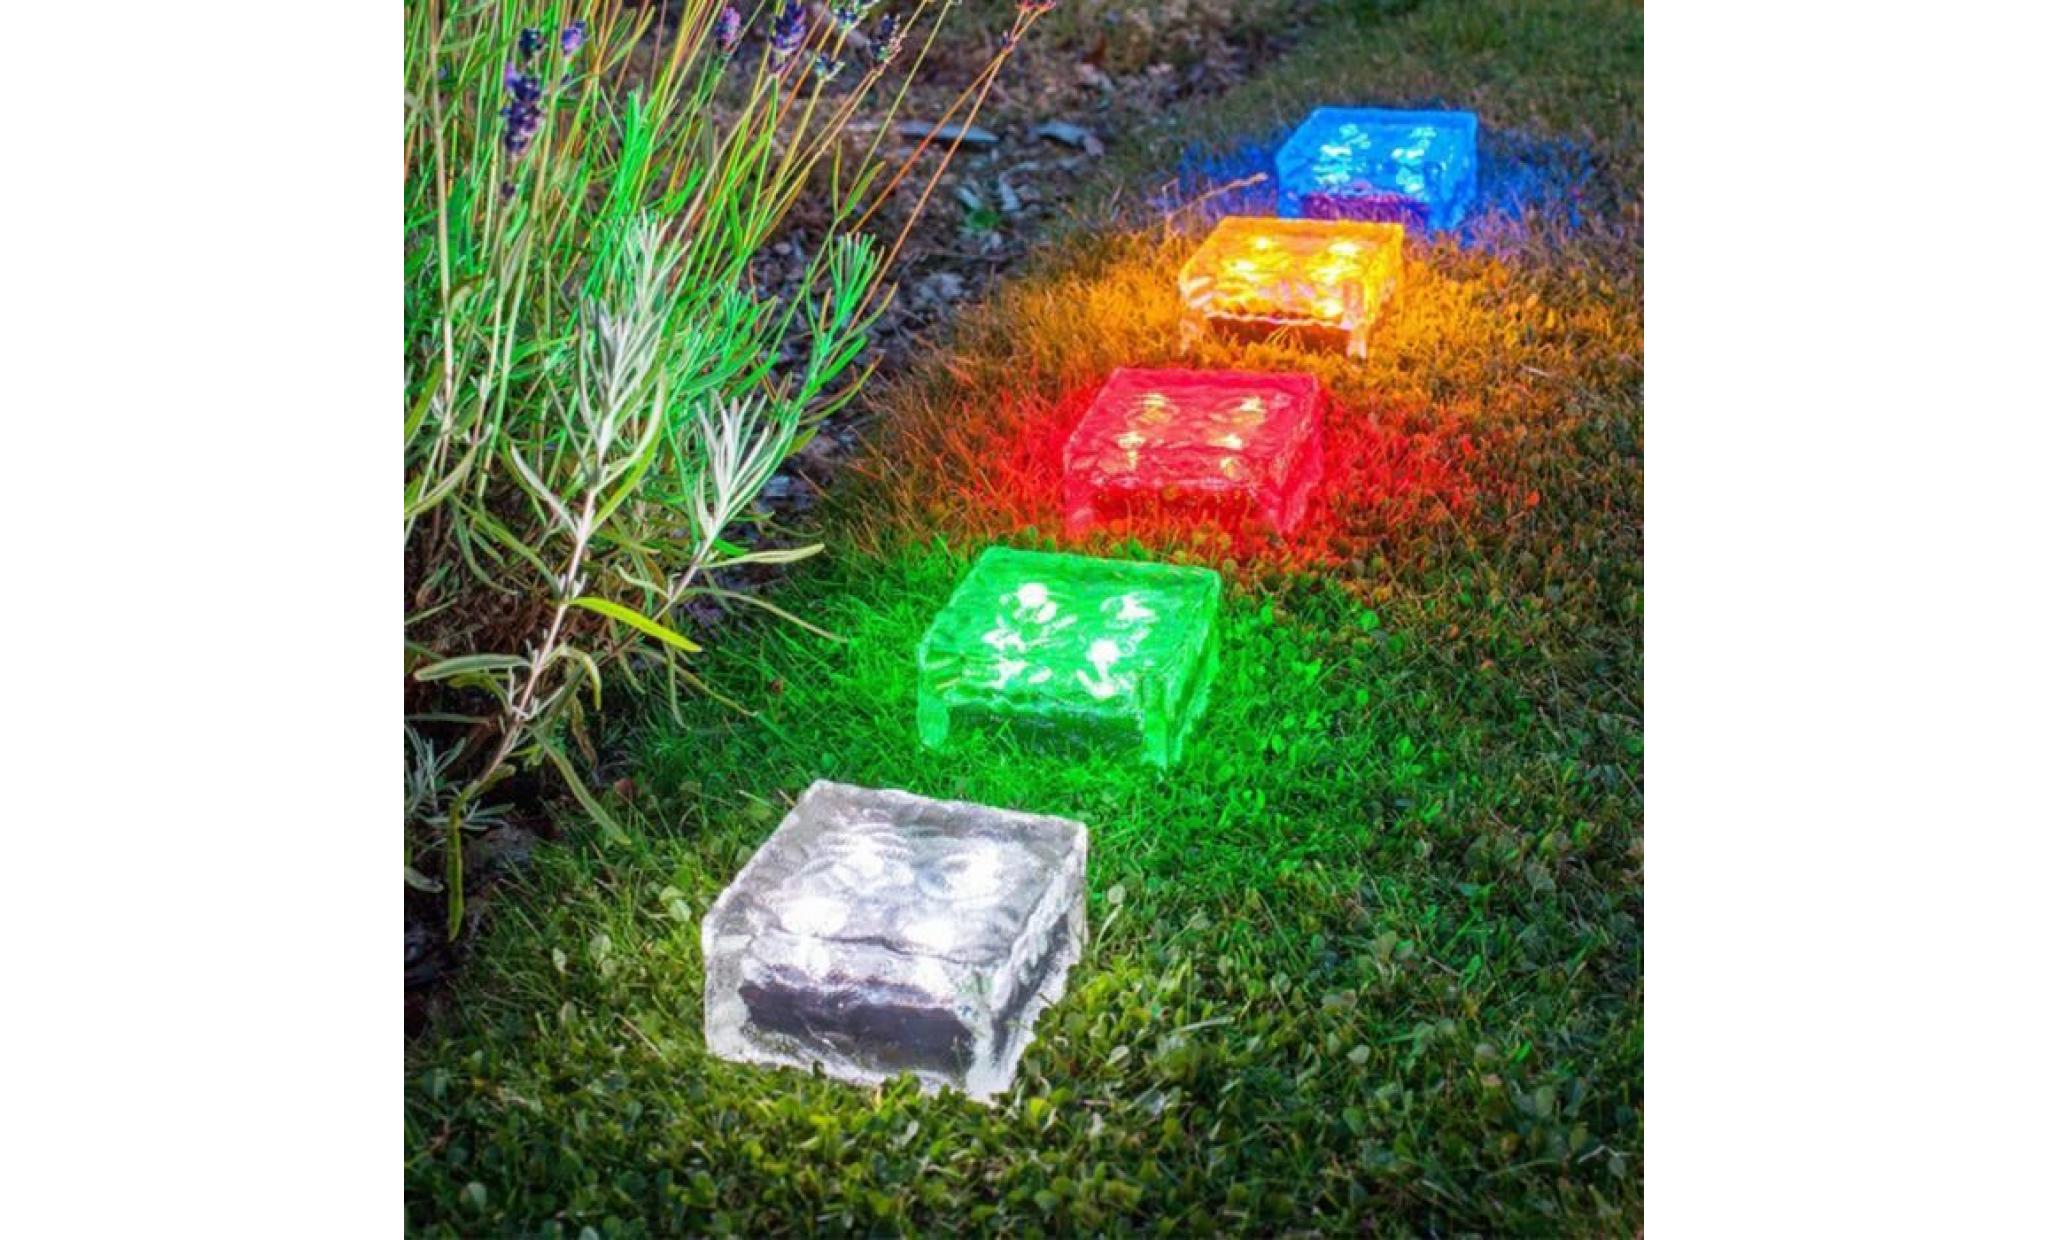 borne solaire solaire imperméable à l'eau led rock light path jardin ice cube brick decor #la 302 pas cher